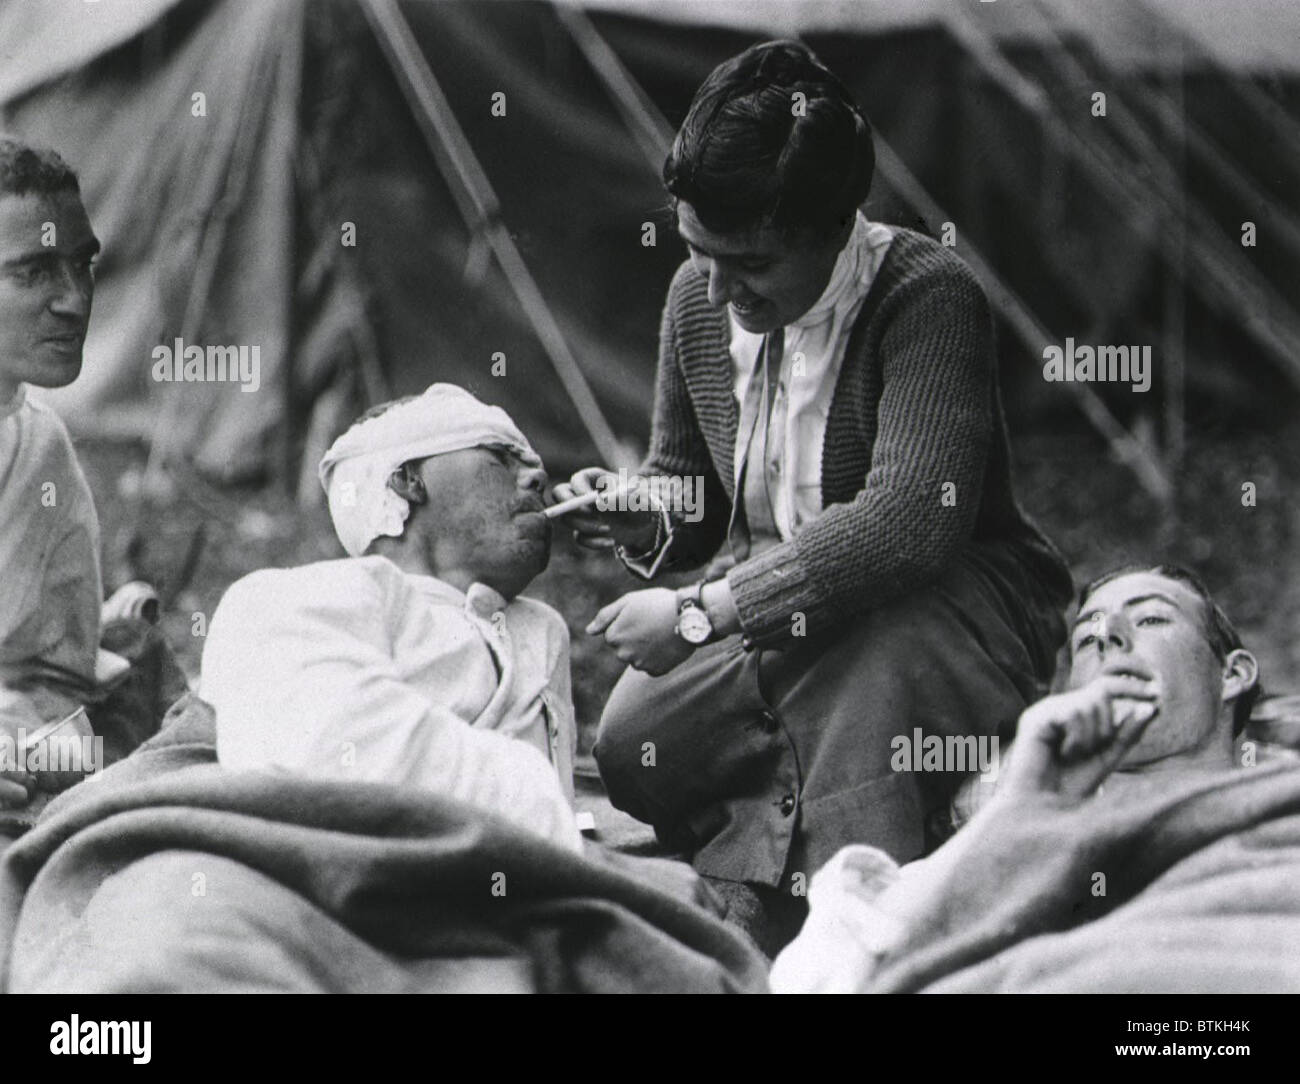 Mlle Anna travailleur de la Croix-Rouge, Rochester du Smith College, aider un soldat blessé avec sa cigarette à l'Hôpital d'évacuation de l'armée américaine, Souilly, la France pendant la Première Guerre mondiale. ca. 1917-1918. Banque D'Images